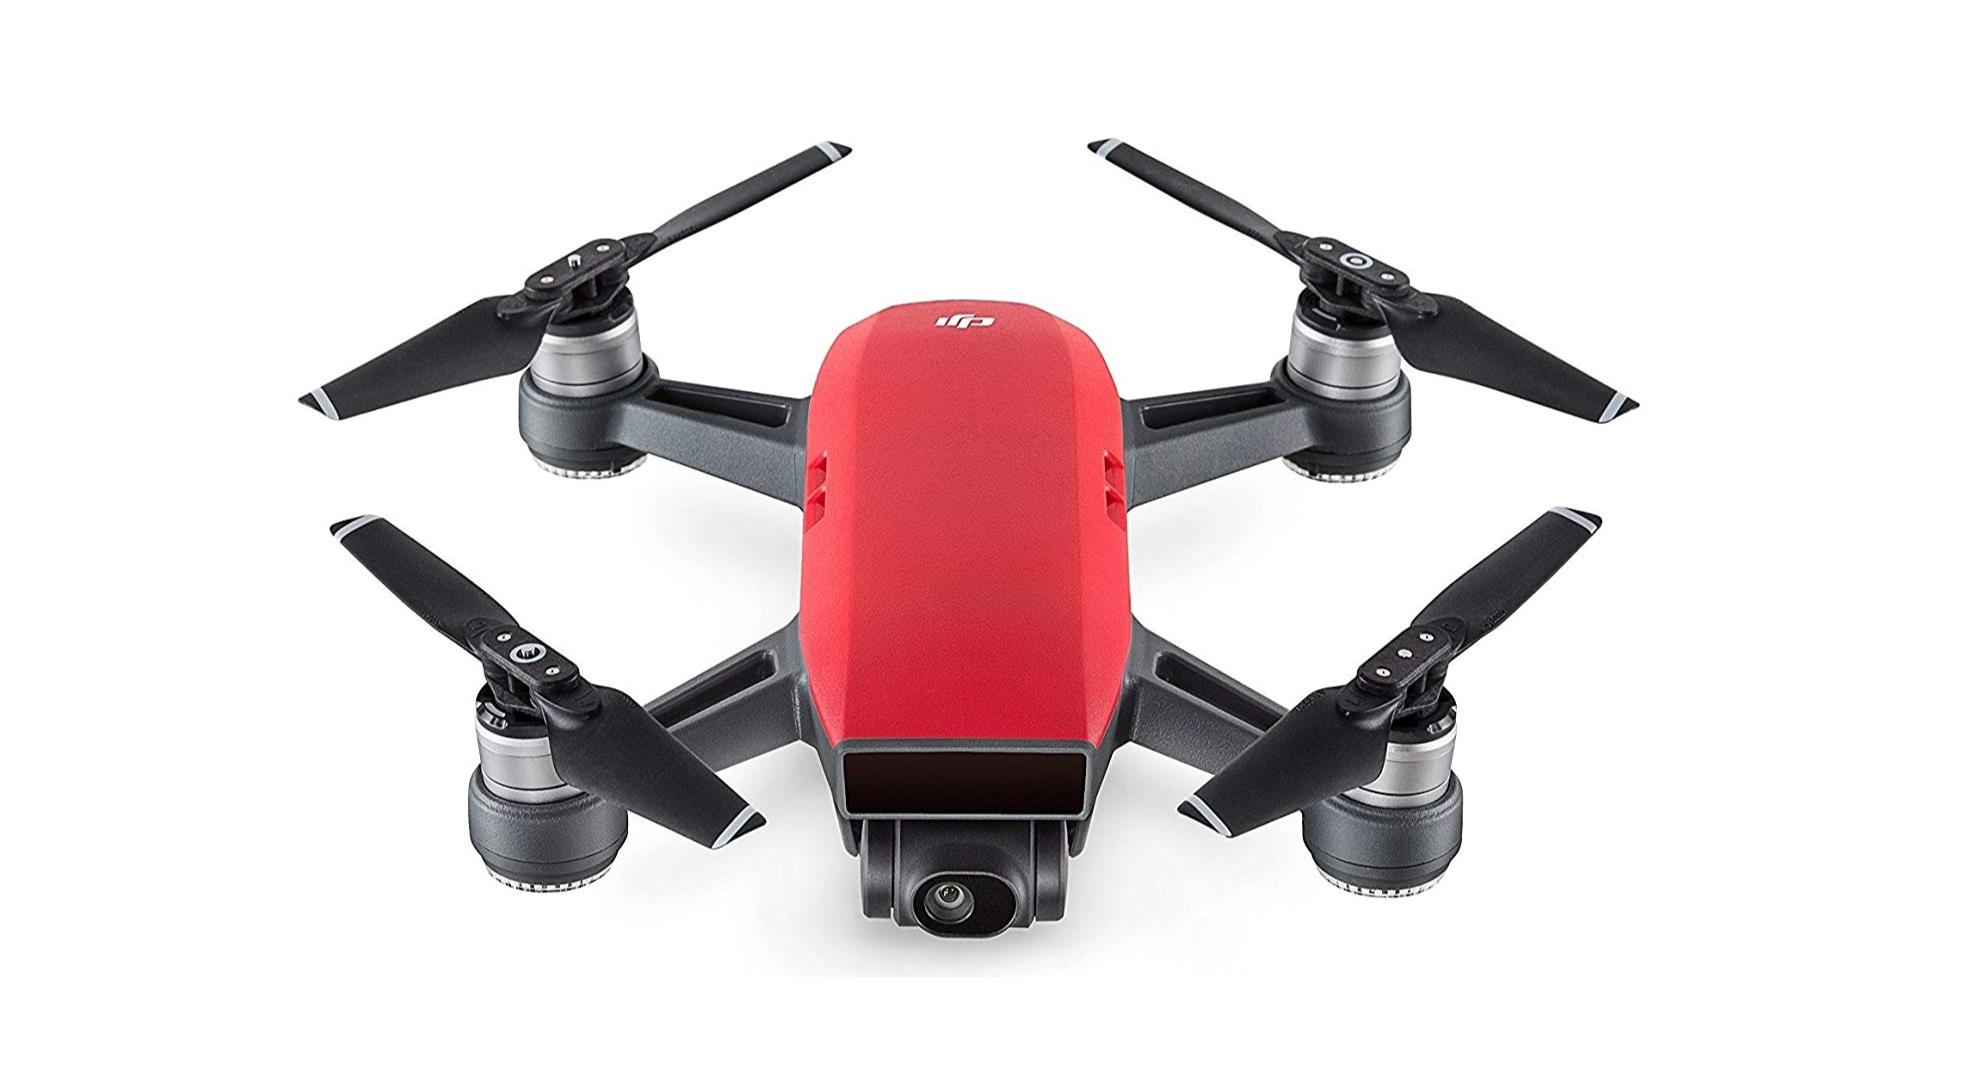 🔥 Bon plan : le drone compact DJI Spark s’affiche à 277 euros sur Amazon (au lieu de 499 euros)